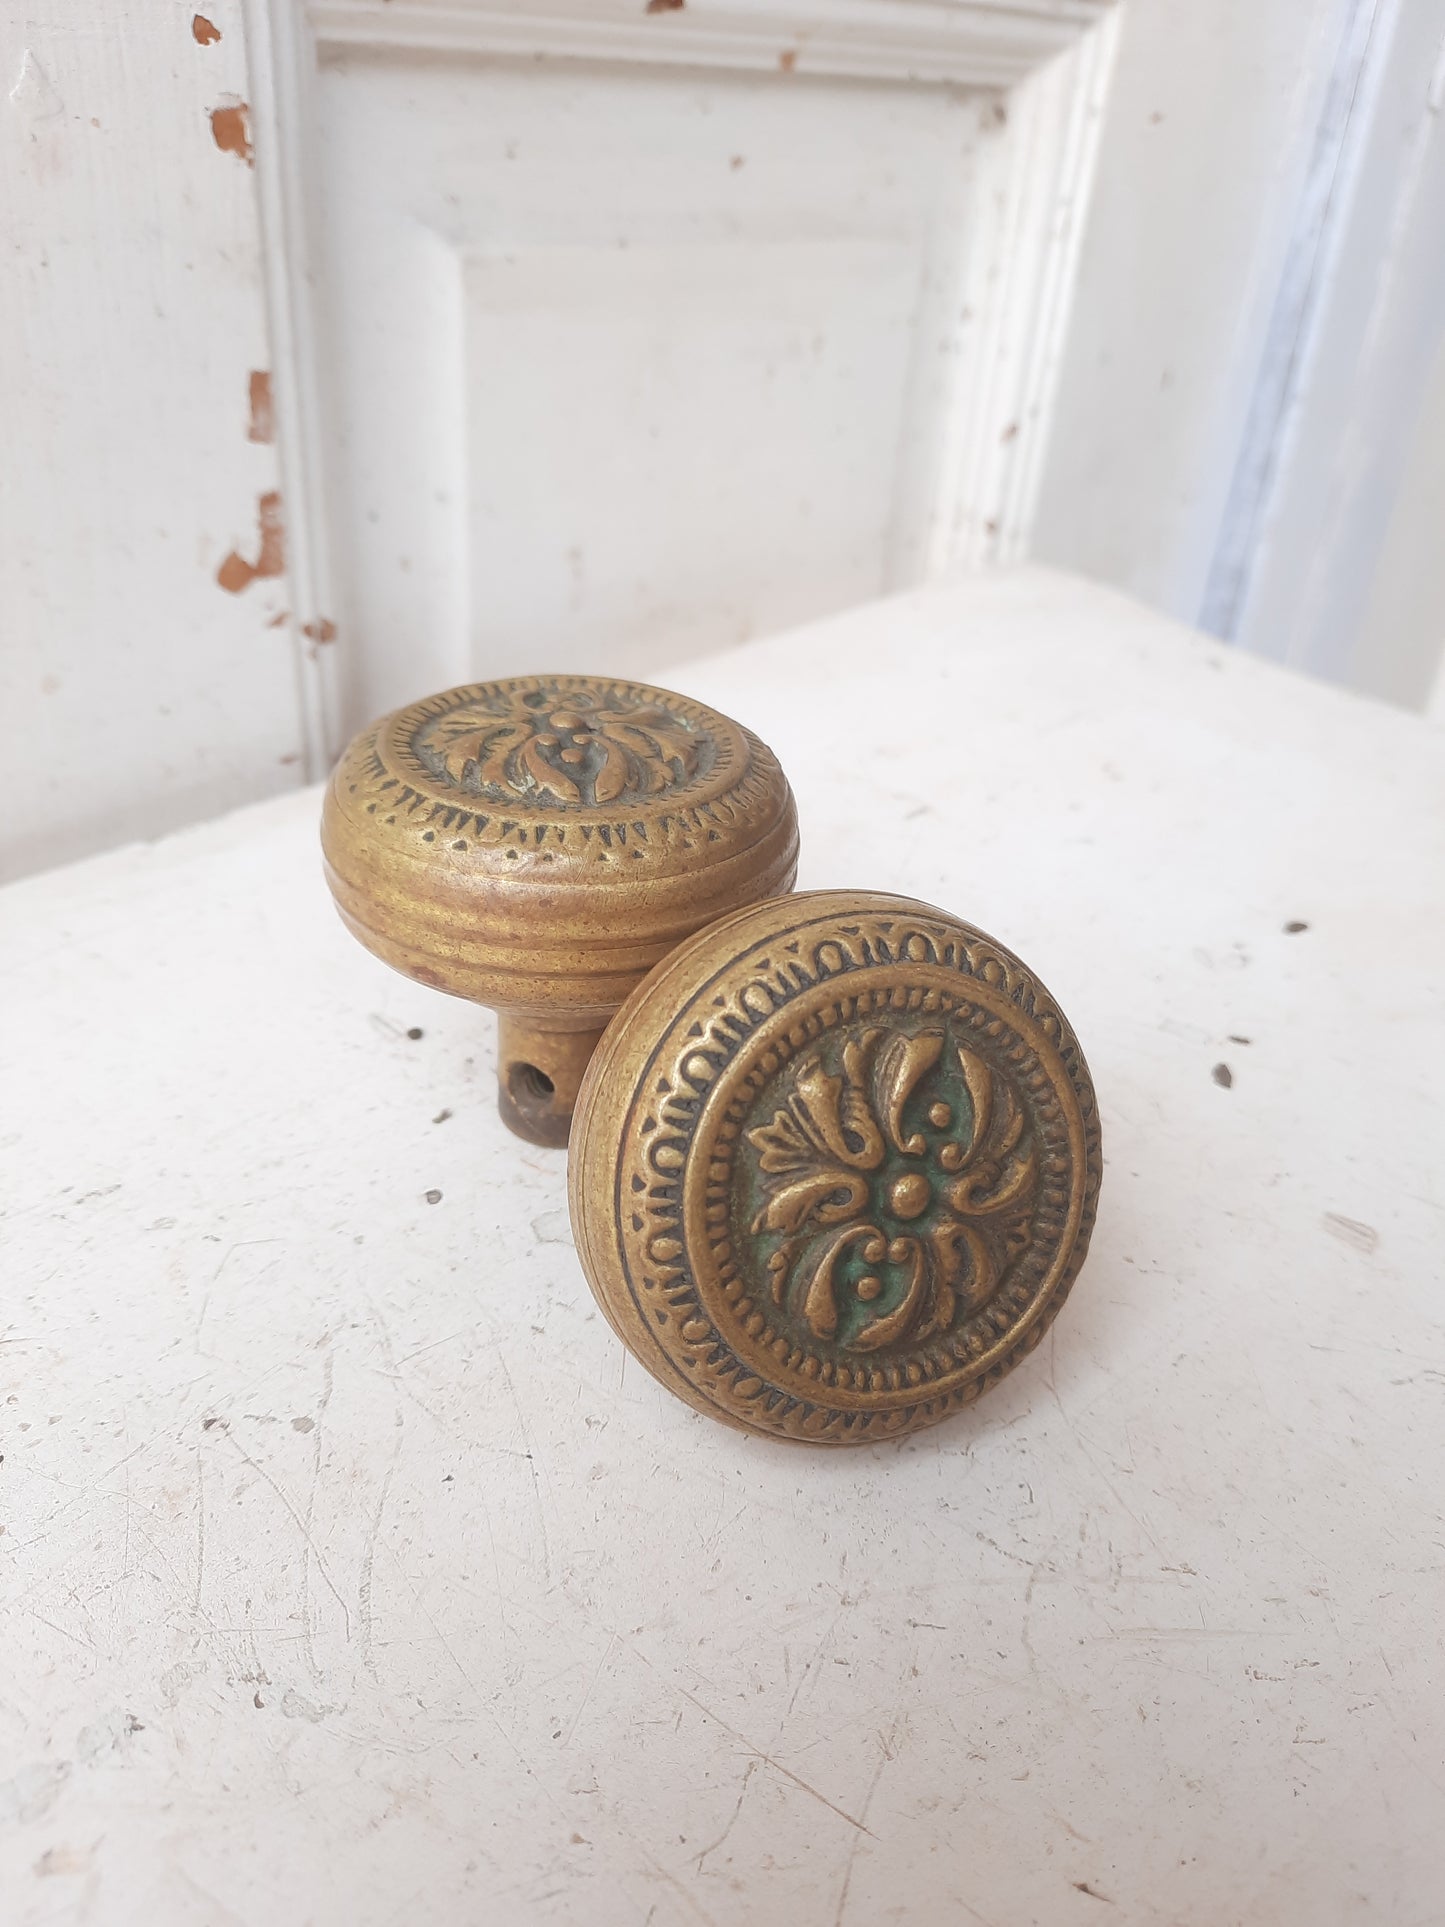 Ornate Pair of Antique Brass Doorknobs, 1900s Brass or Bronze Door Knobs with Design F-208